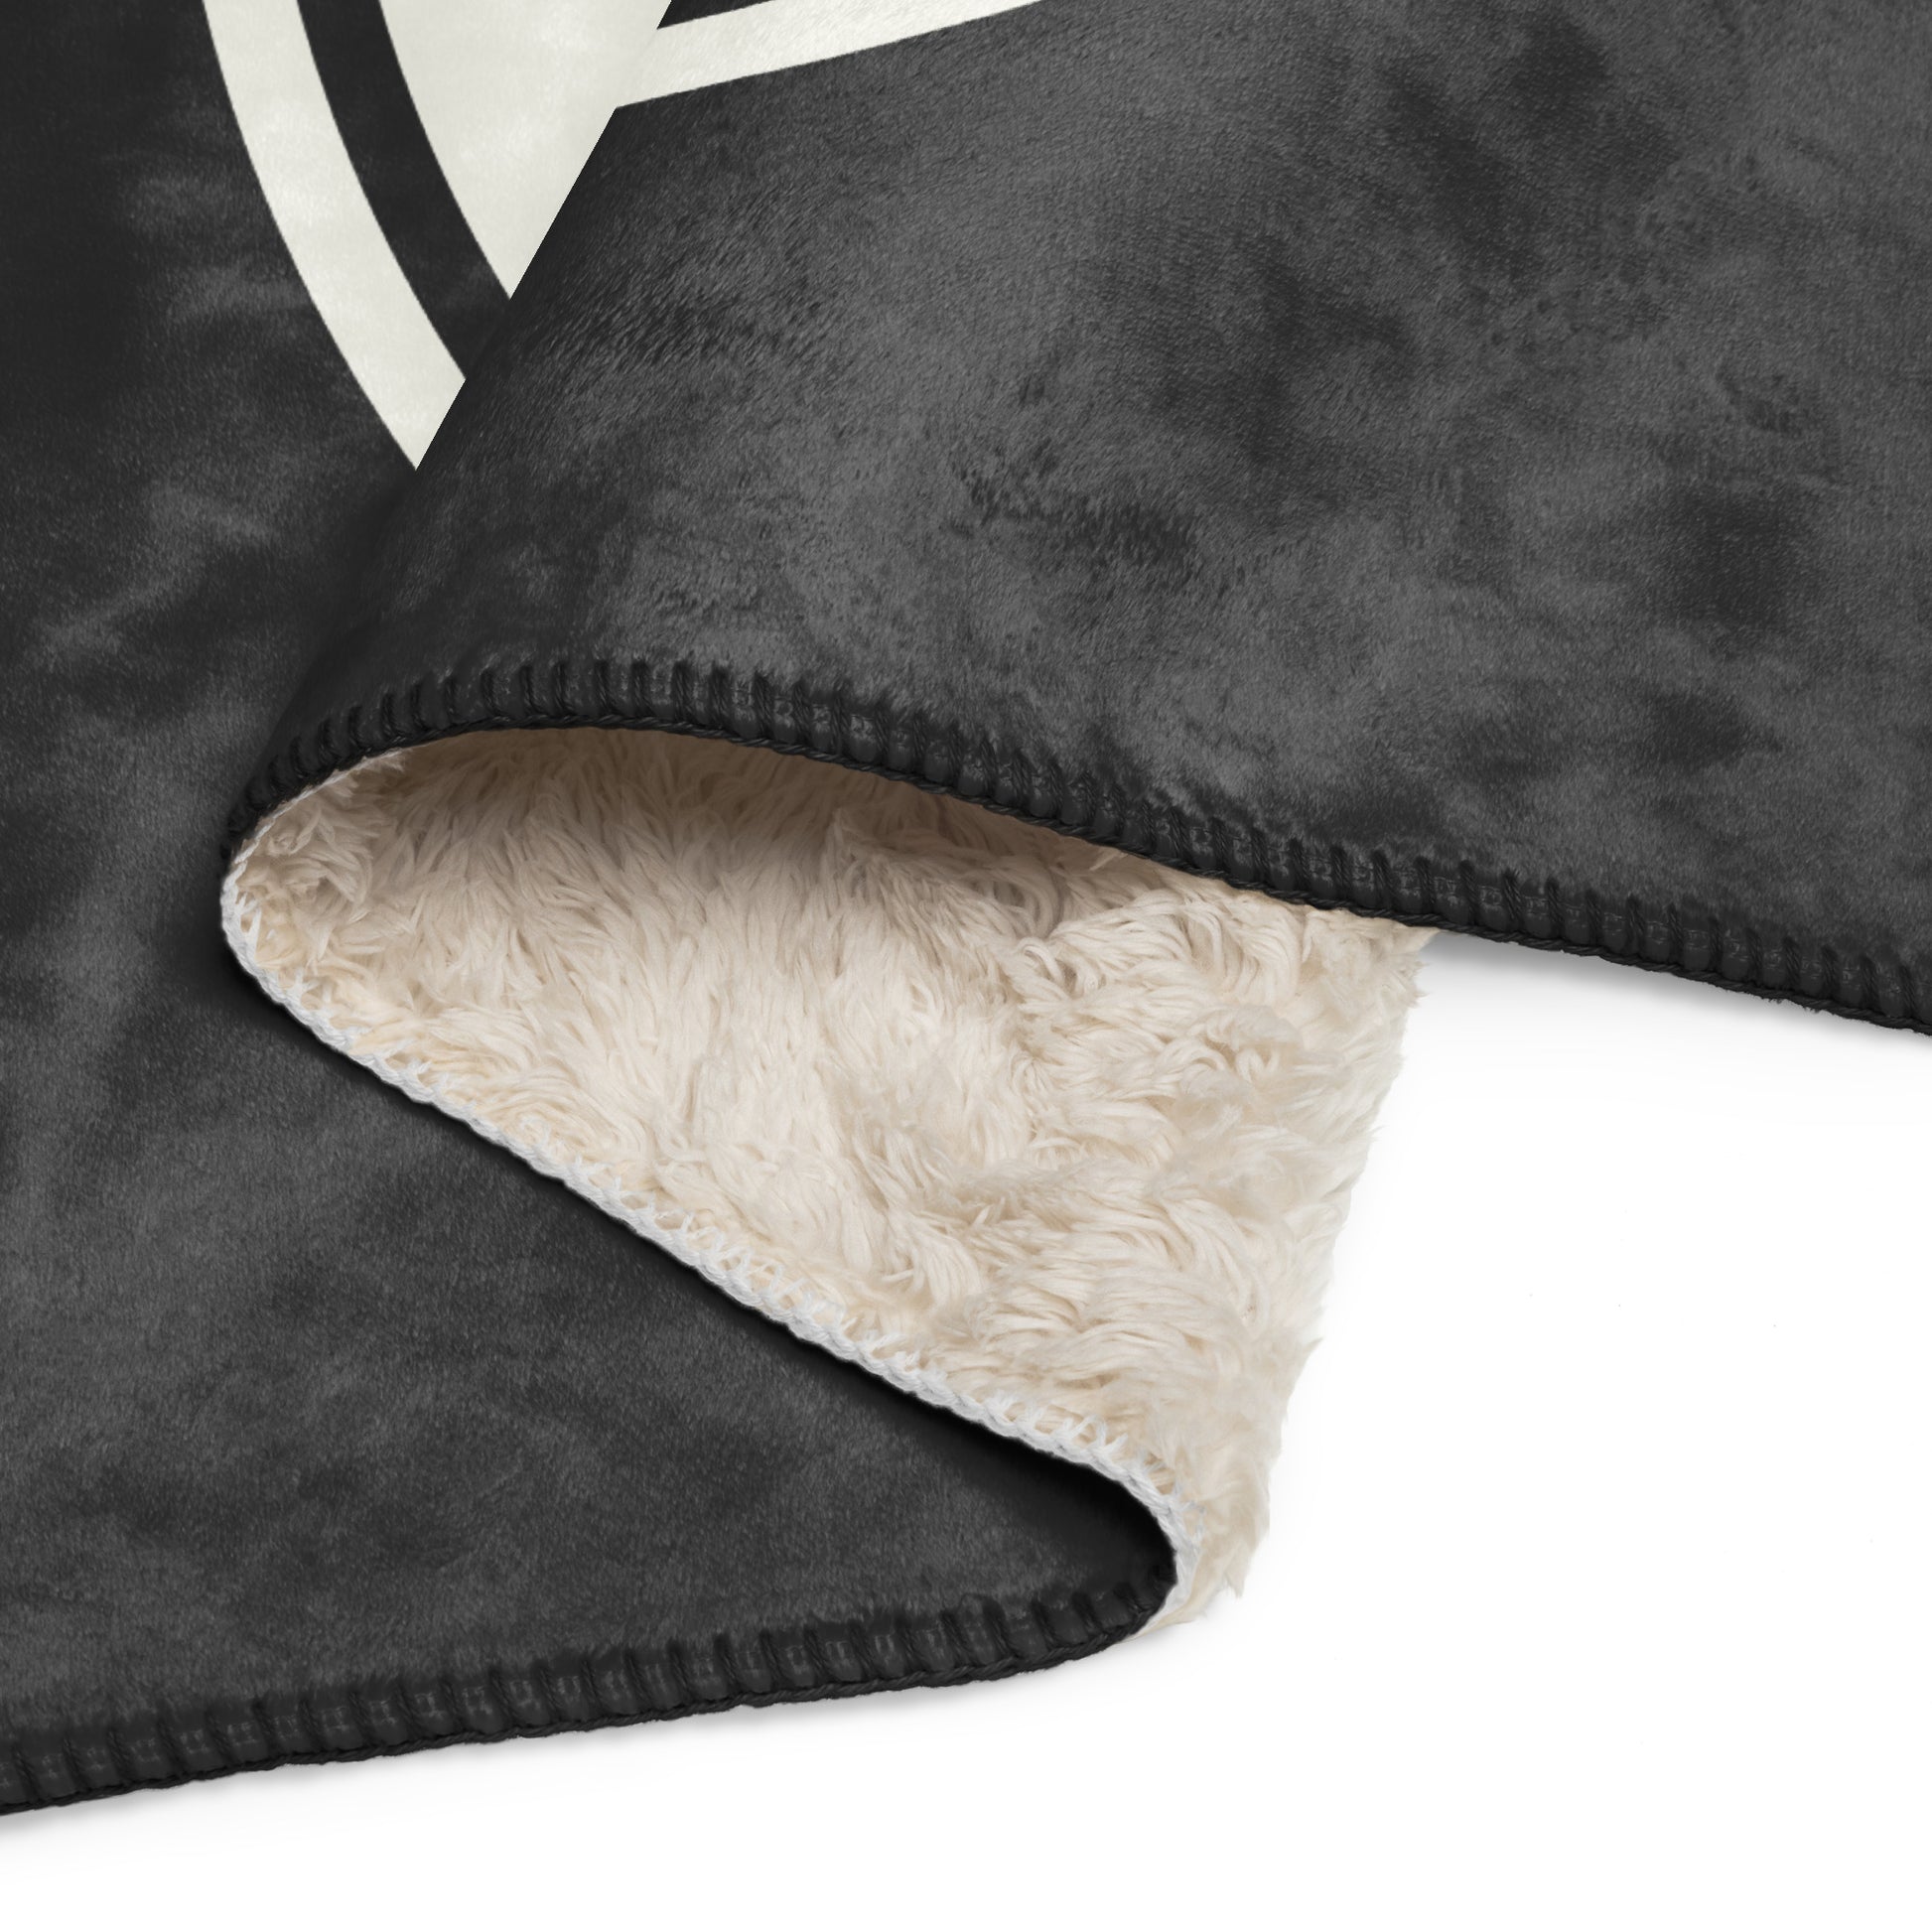 Unique Travel Gift Sherpa Blanket - White Oval • DEN Denver • YHM Designs - Image 08